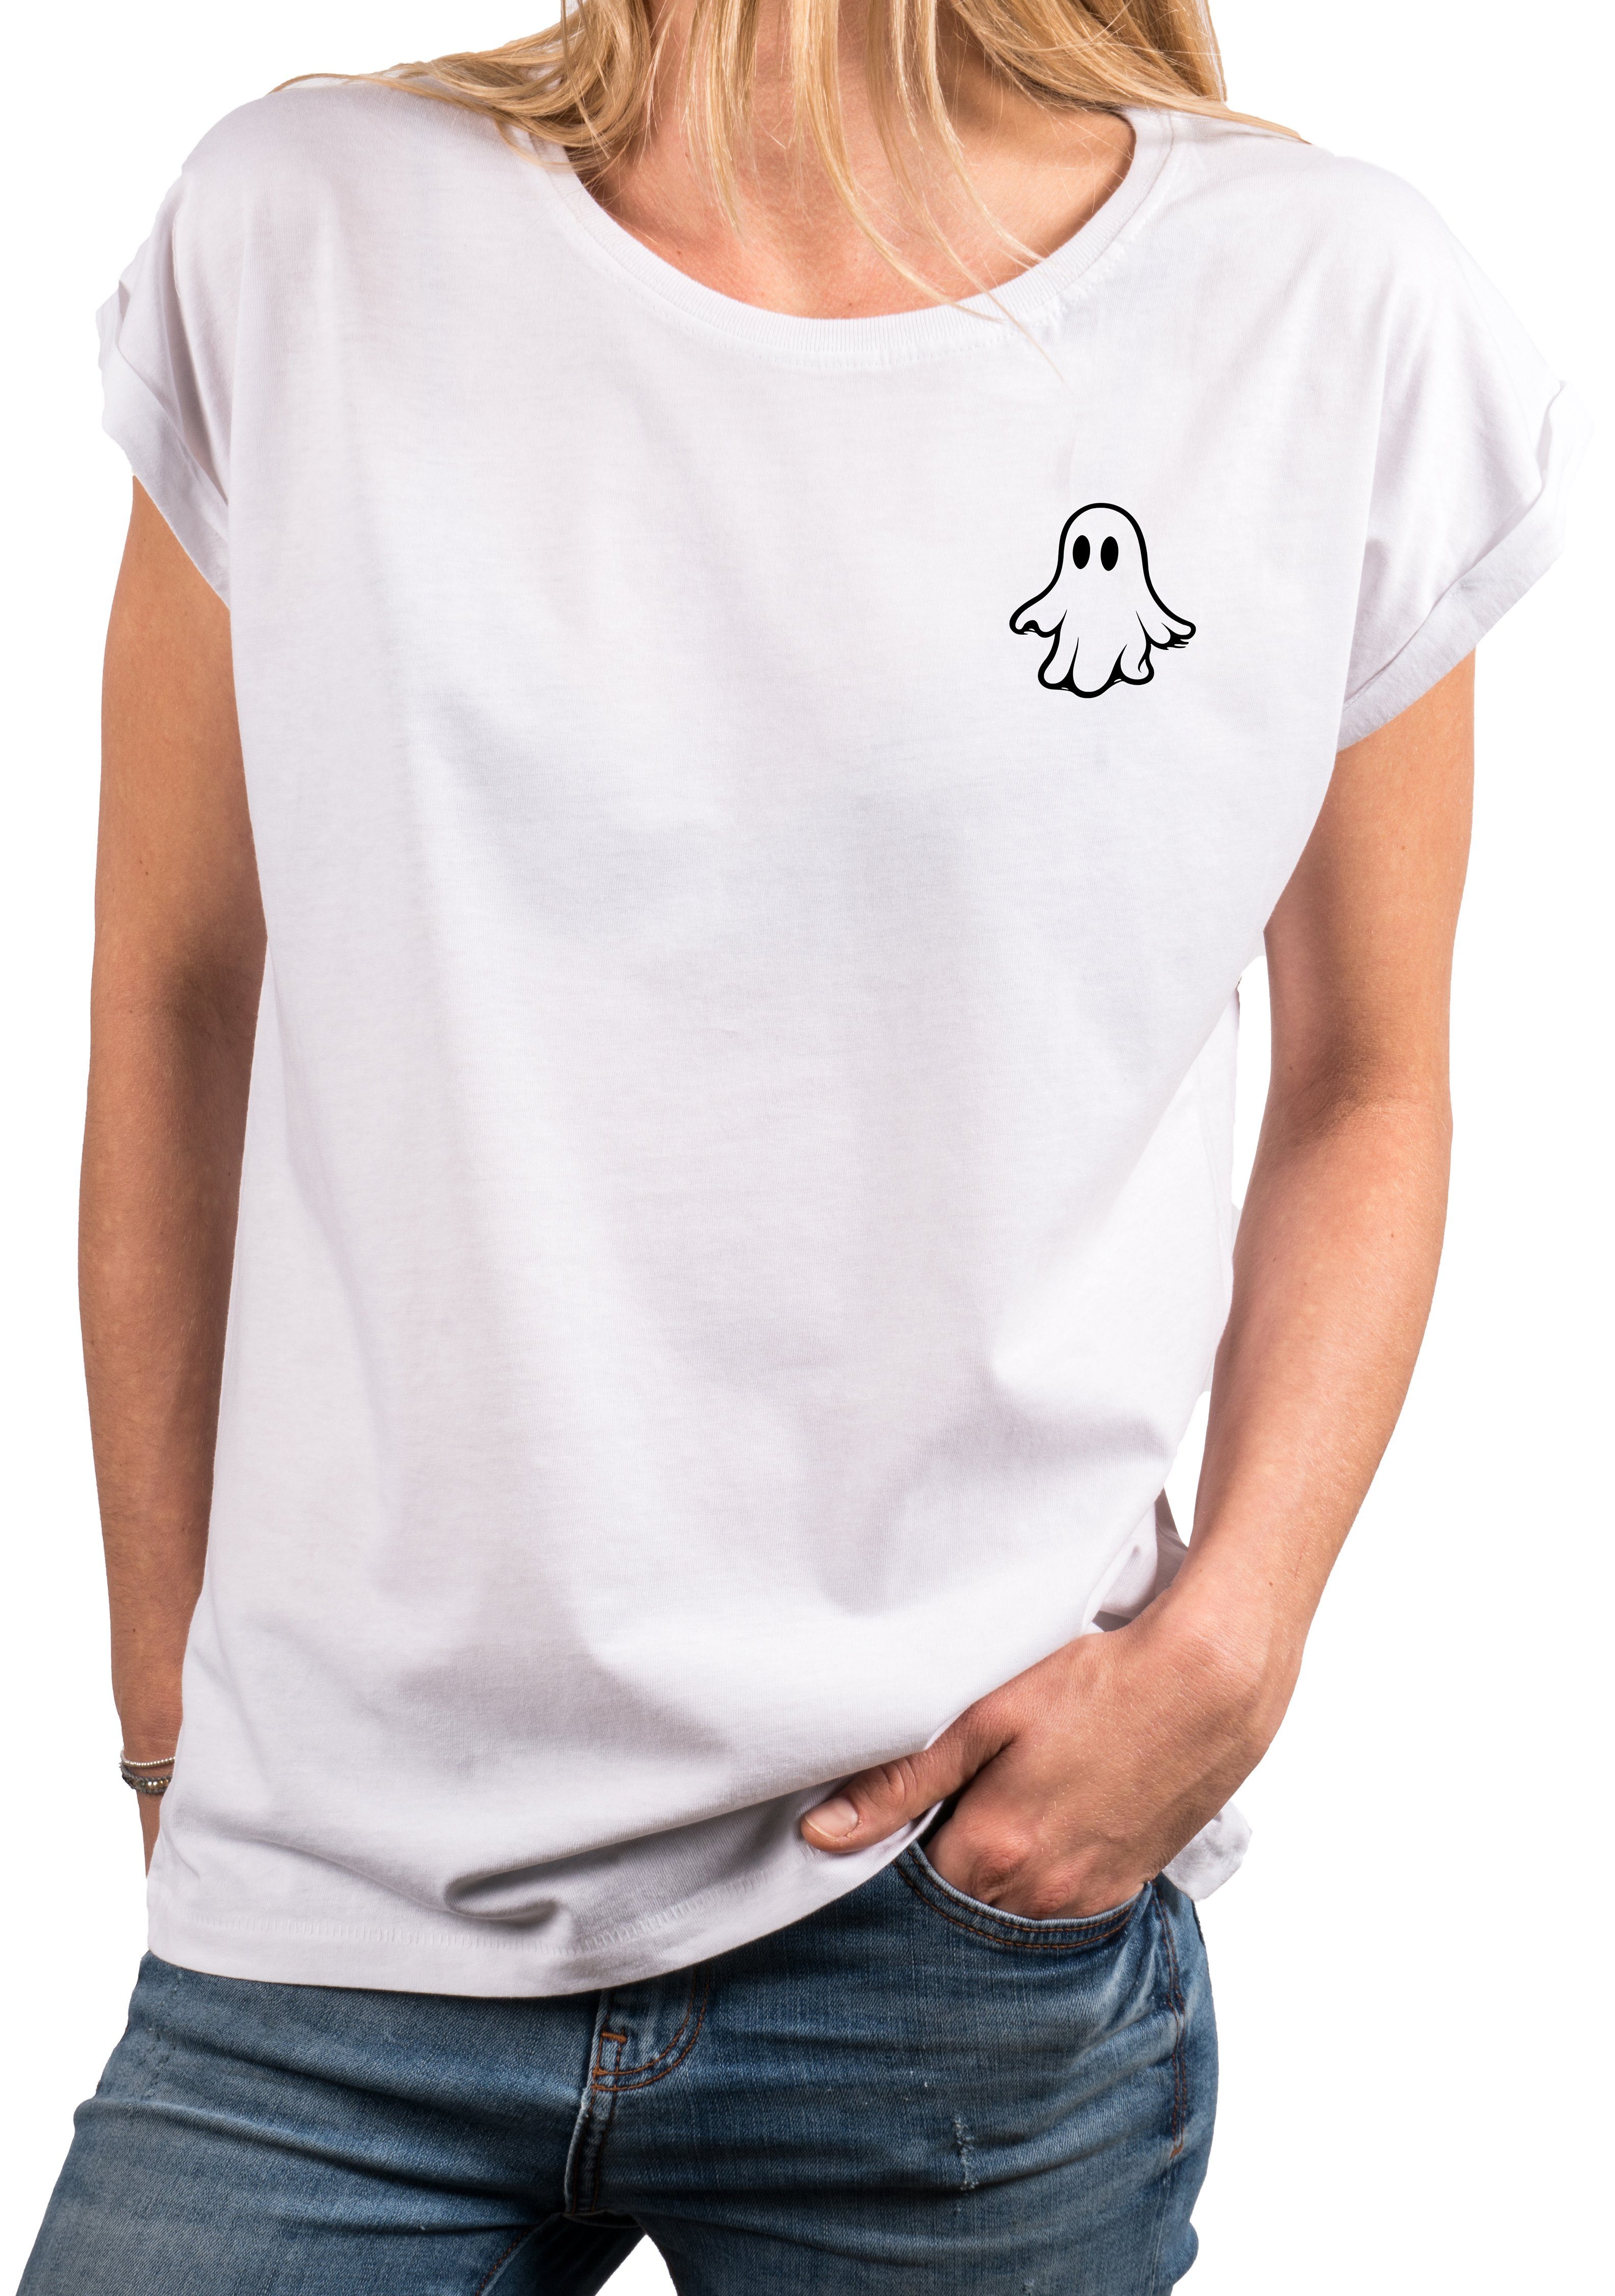 cool lustig Top MAKAYA witzig Geister Ghost, Gespenst, frech ausgefallen modisch Geist Kurzarm Damen Print-Shirt